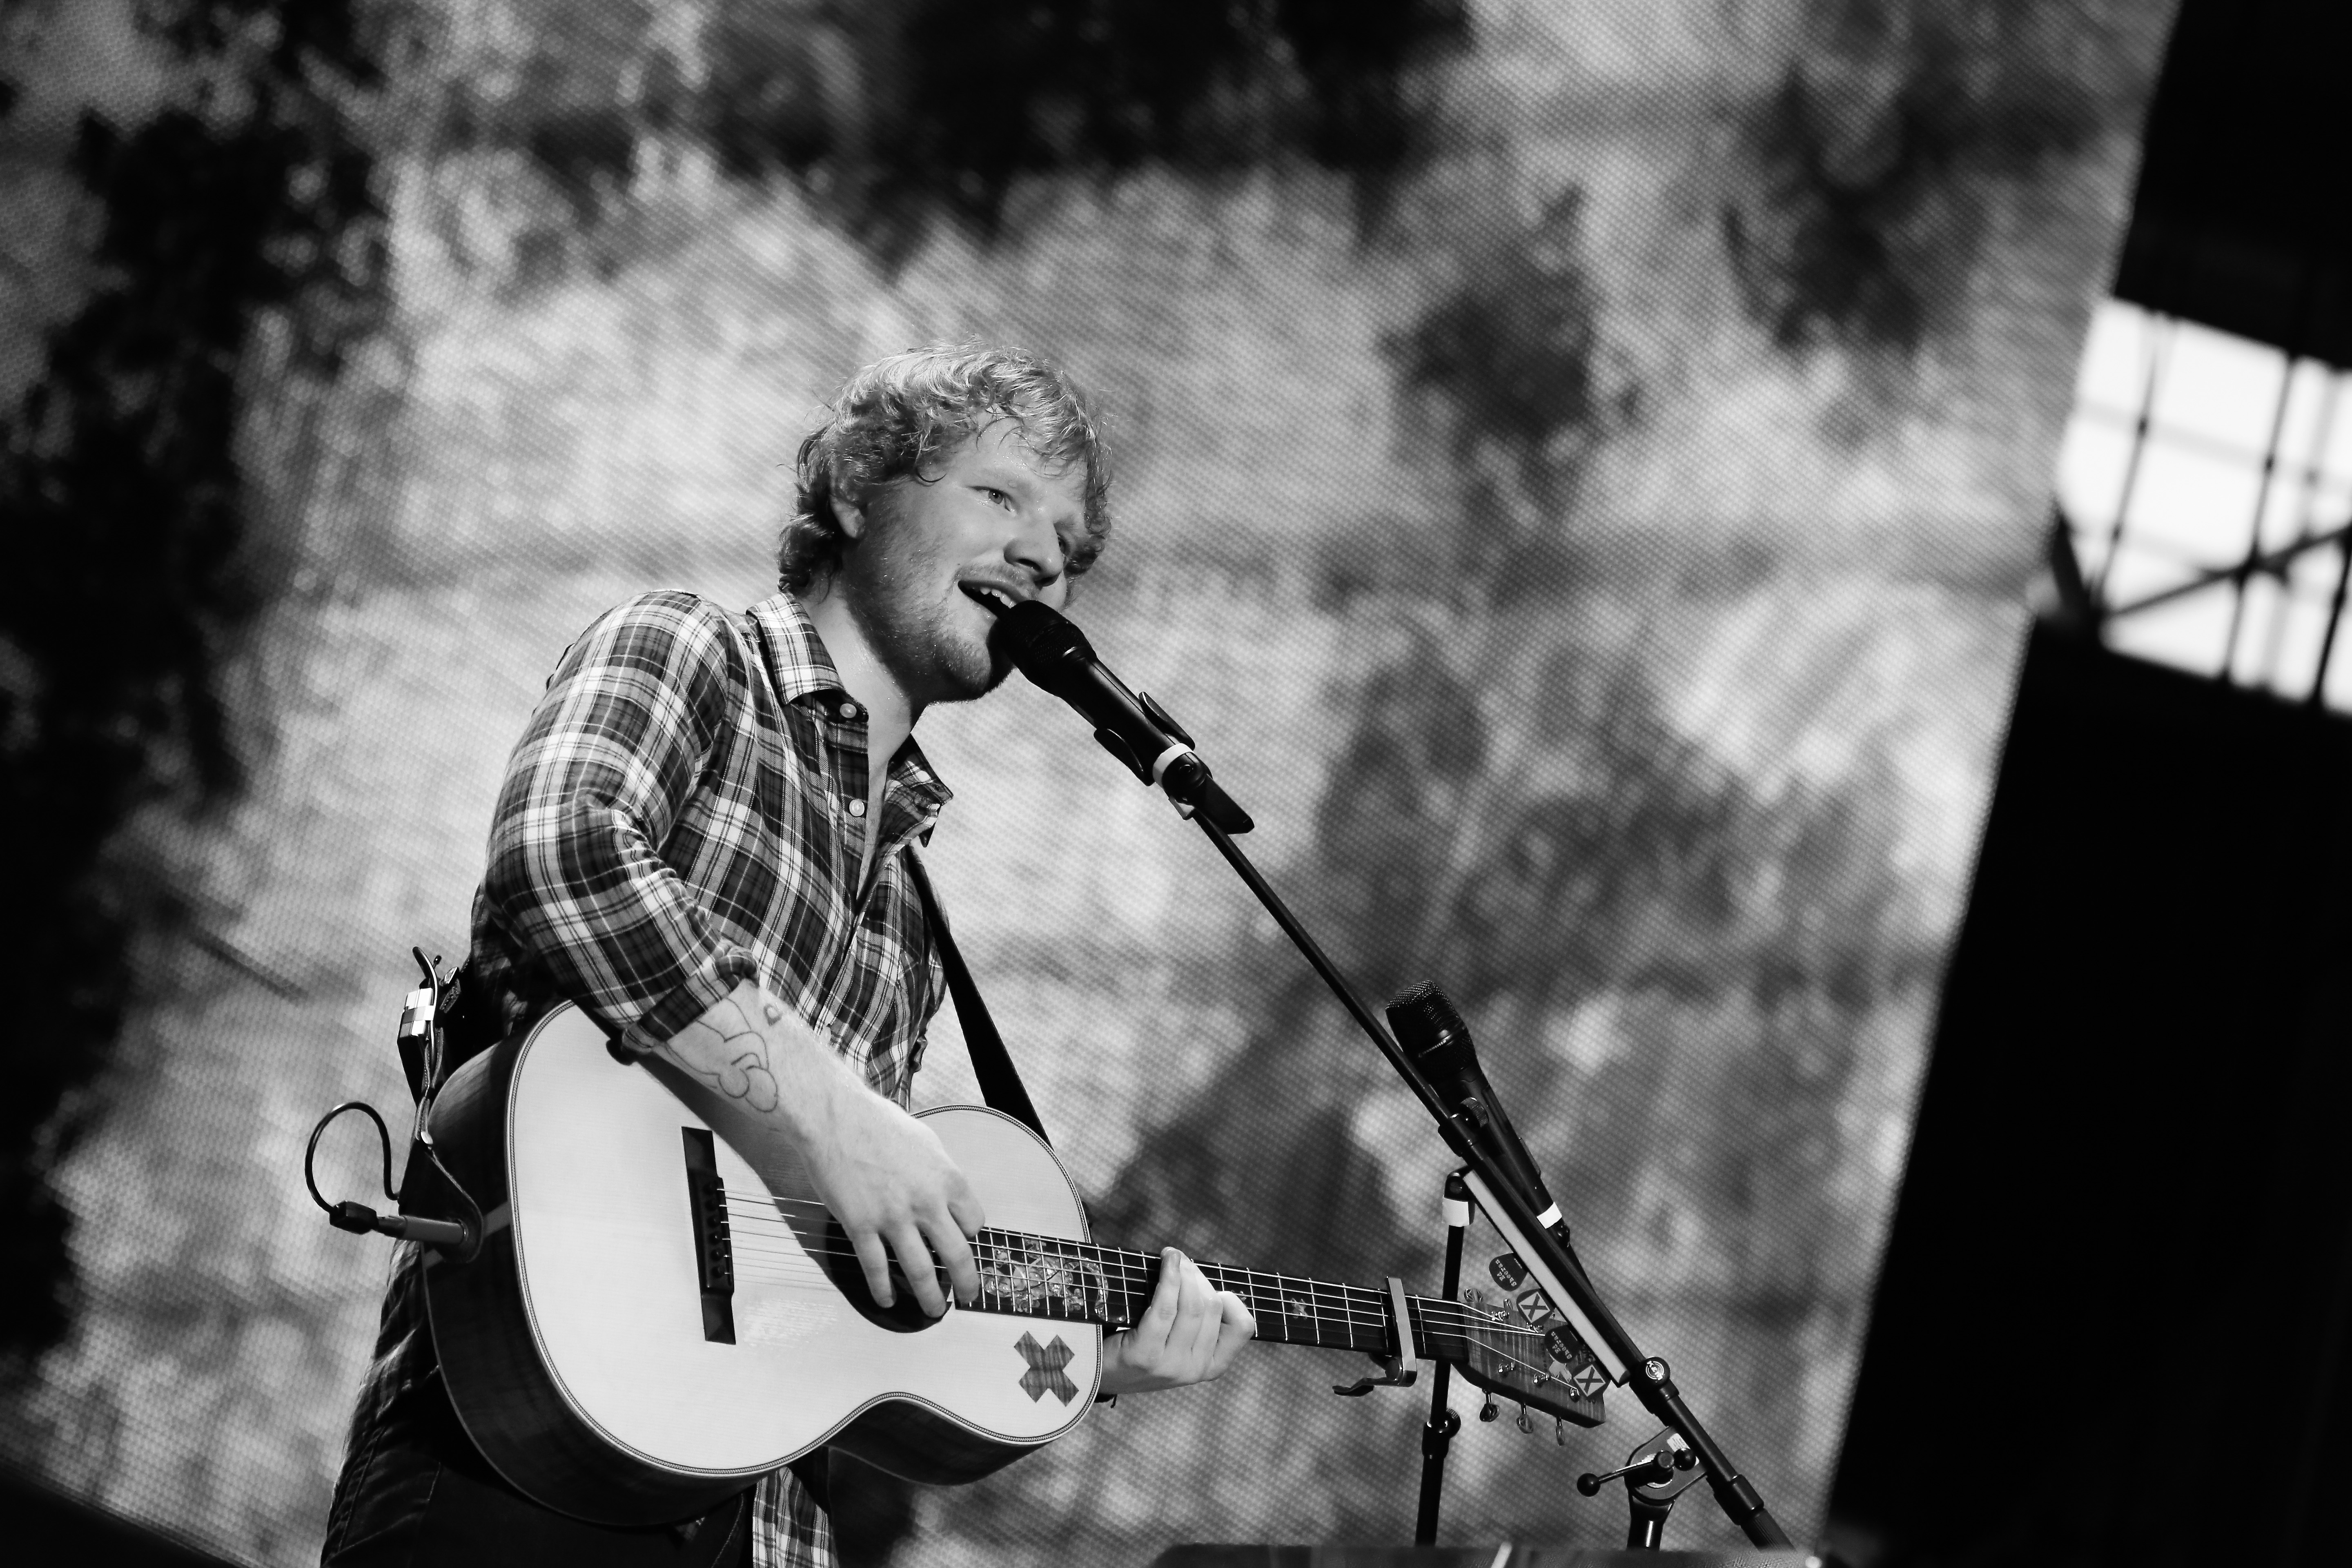 Melhores papéis de parede de Ed Sheeran para tela do telefone